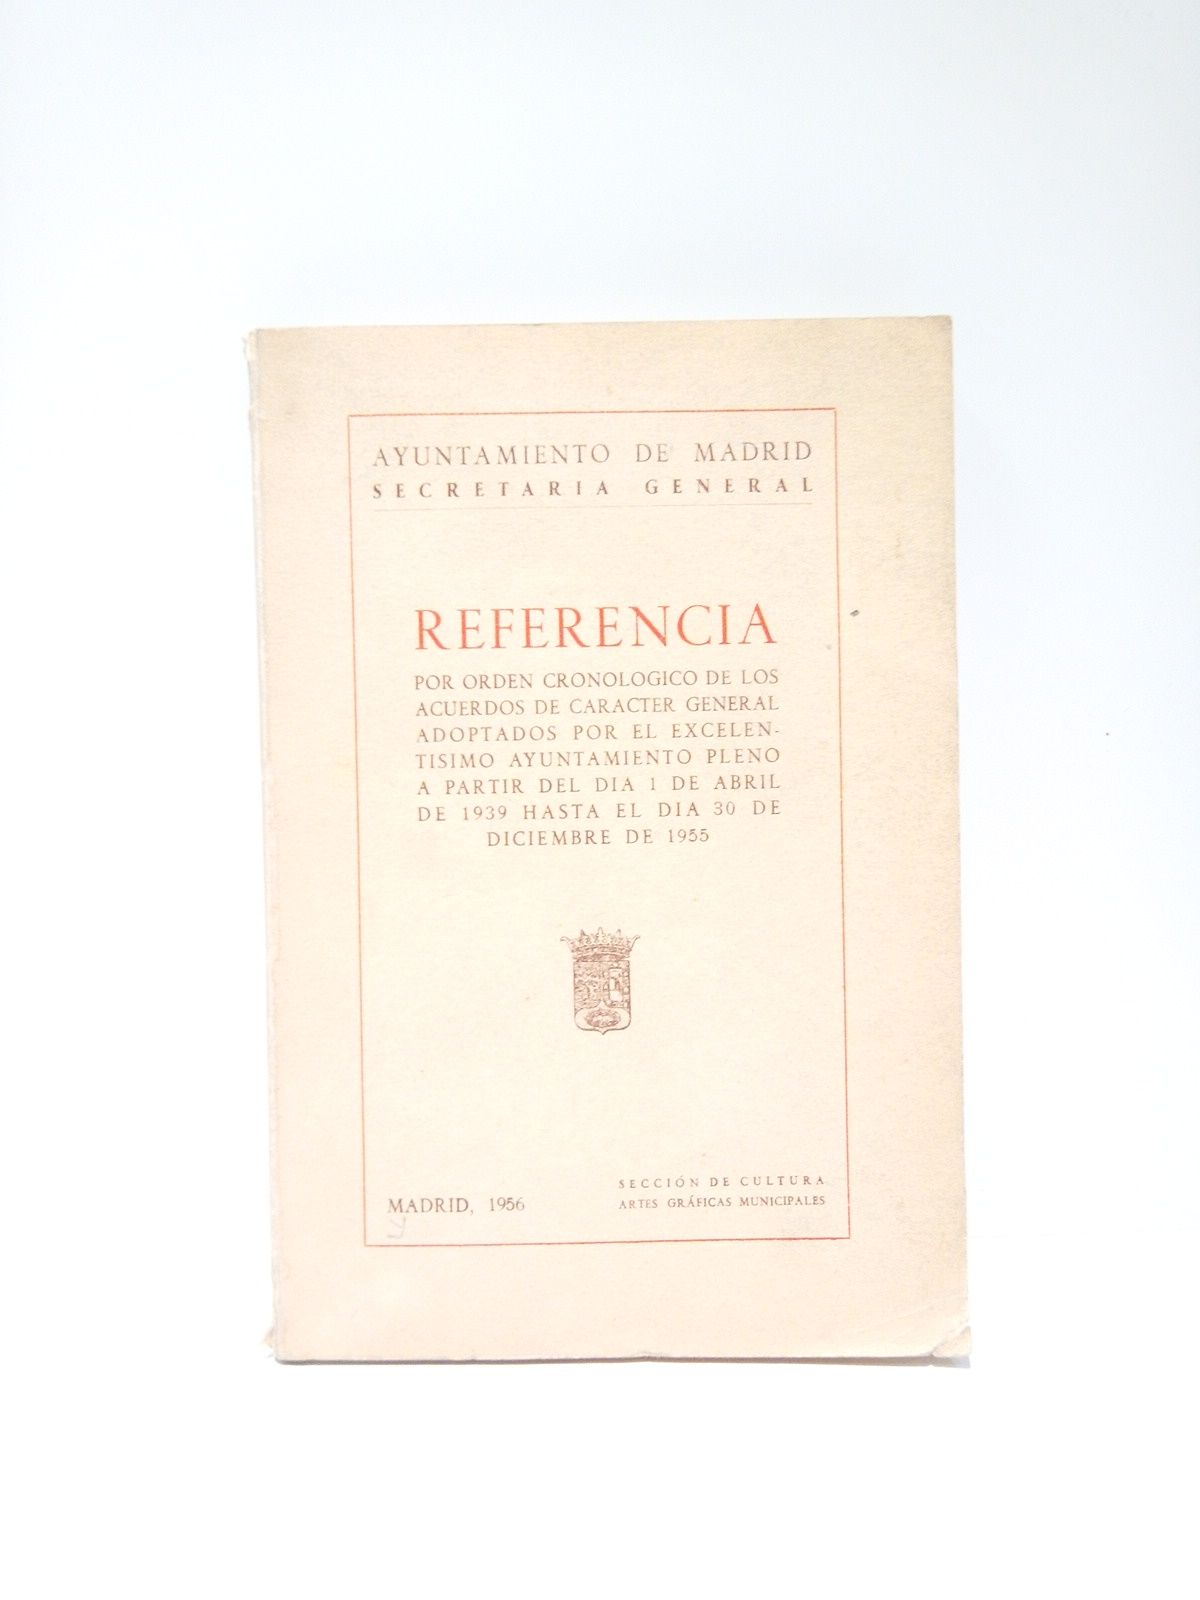 AYUNTAMIENTO DE MADRID - Referencia por orden cronolgico de los acuerdos de carcter general adoptados por el Excelentsimo Ayuntamiento pleno a partir del da 1 de abril de 1939 hasta el da 30 de diciembre de 1955